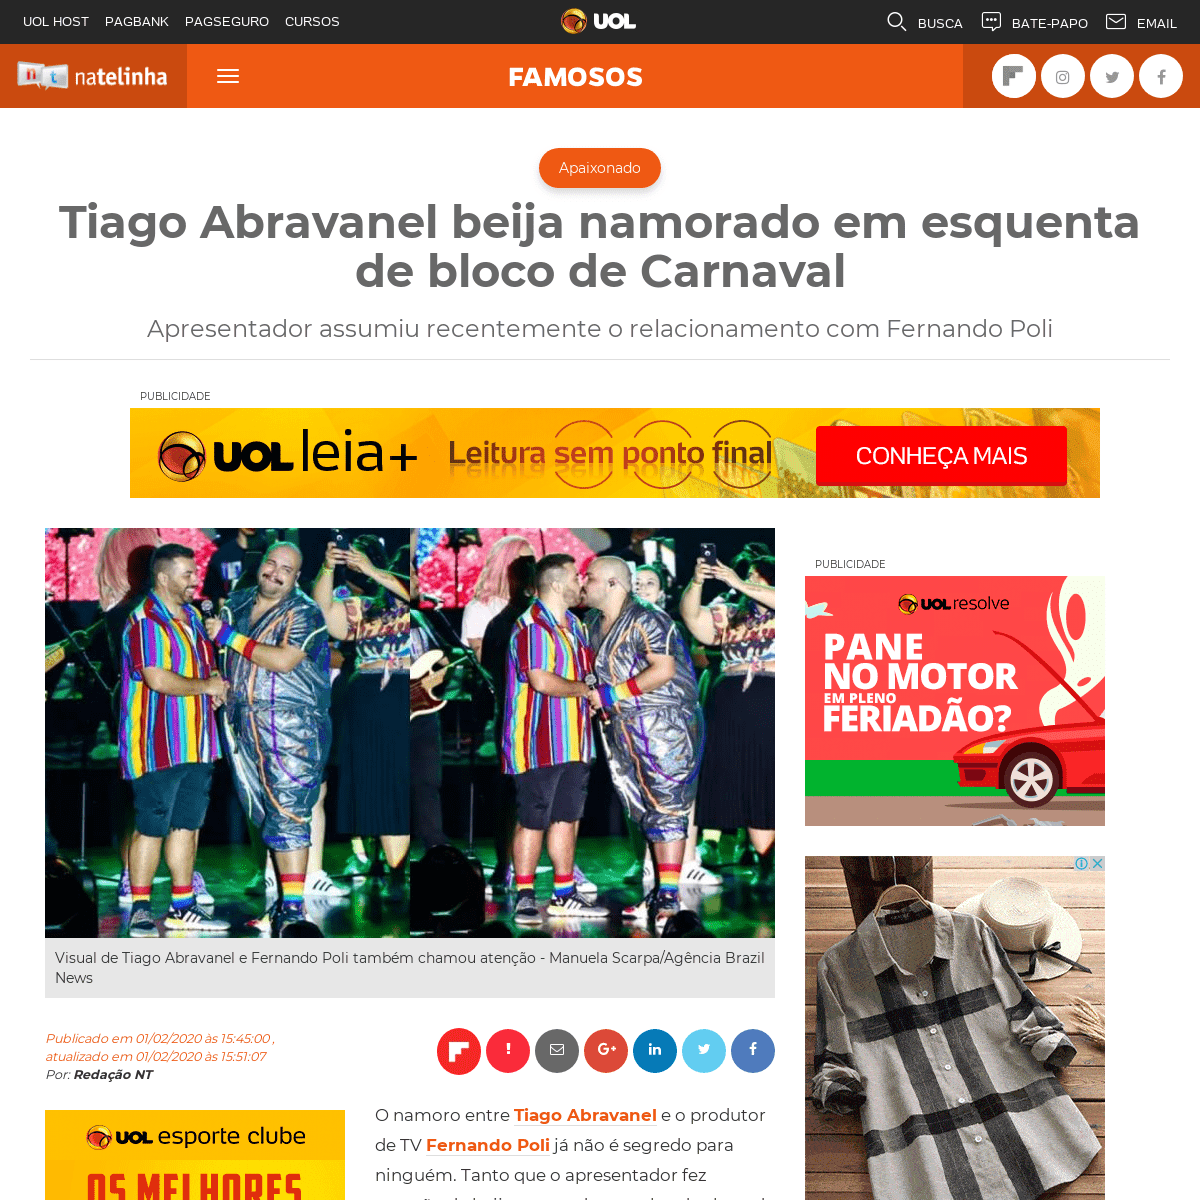 Tiago Abravanel beija namorado em esquenta de bloco de Carnaval - Famosos - NaTelinha